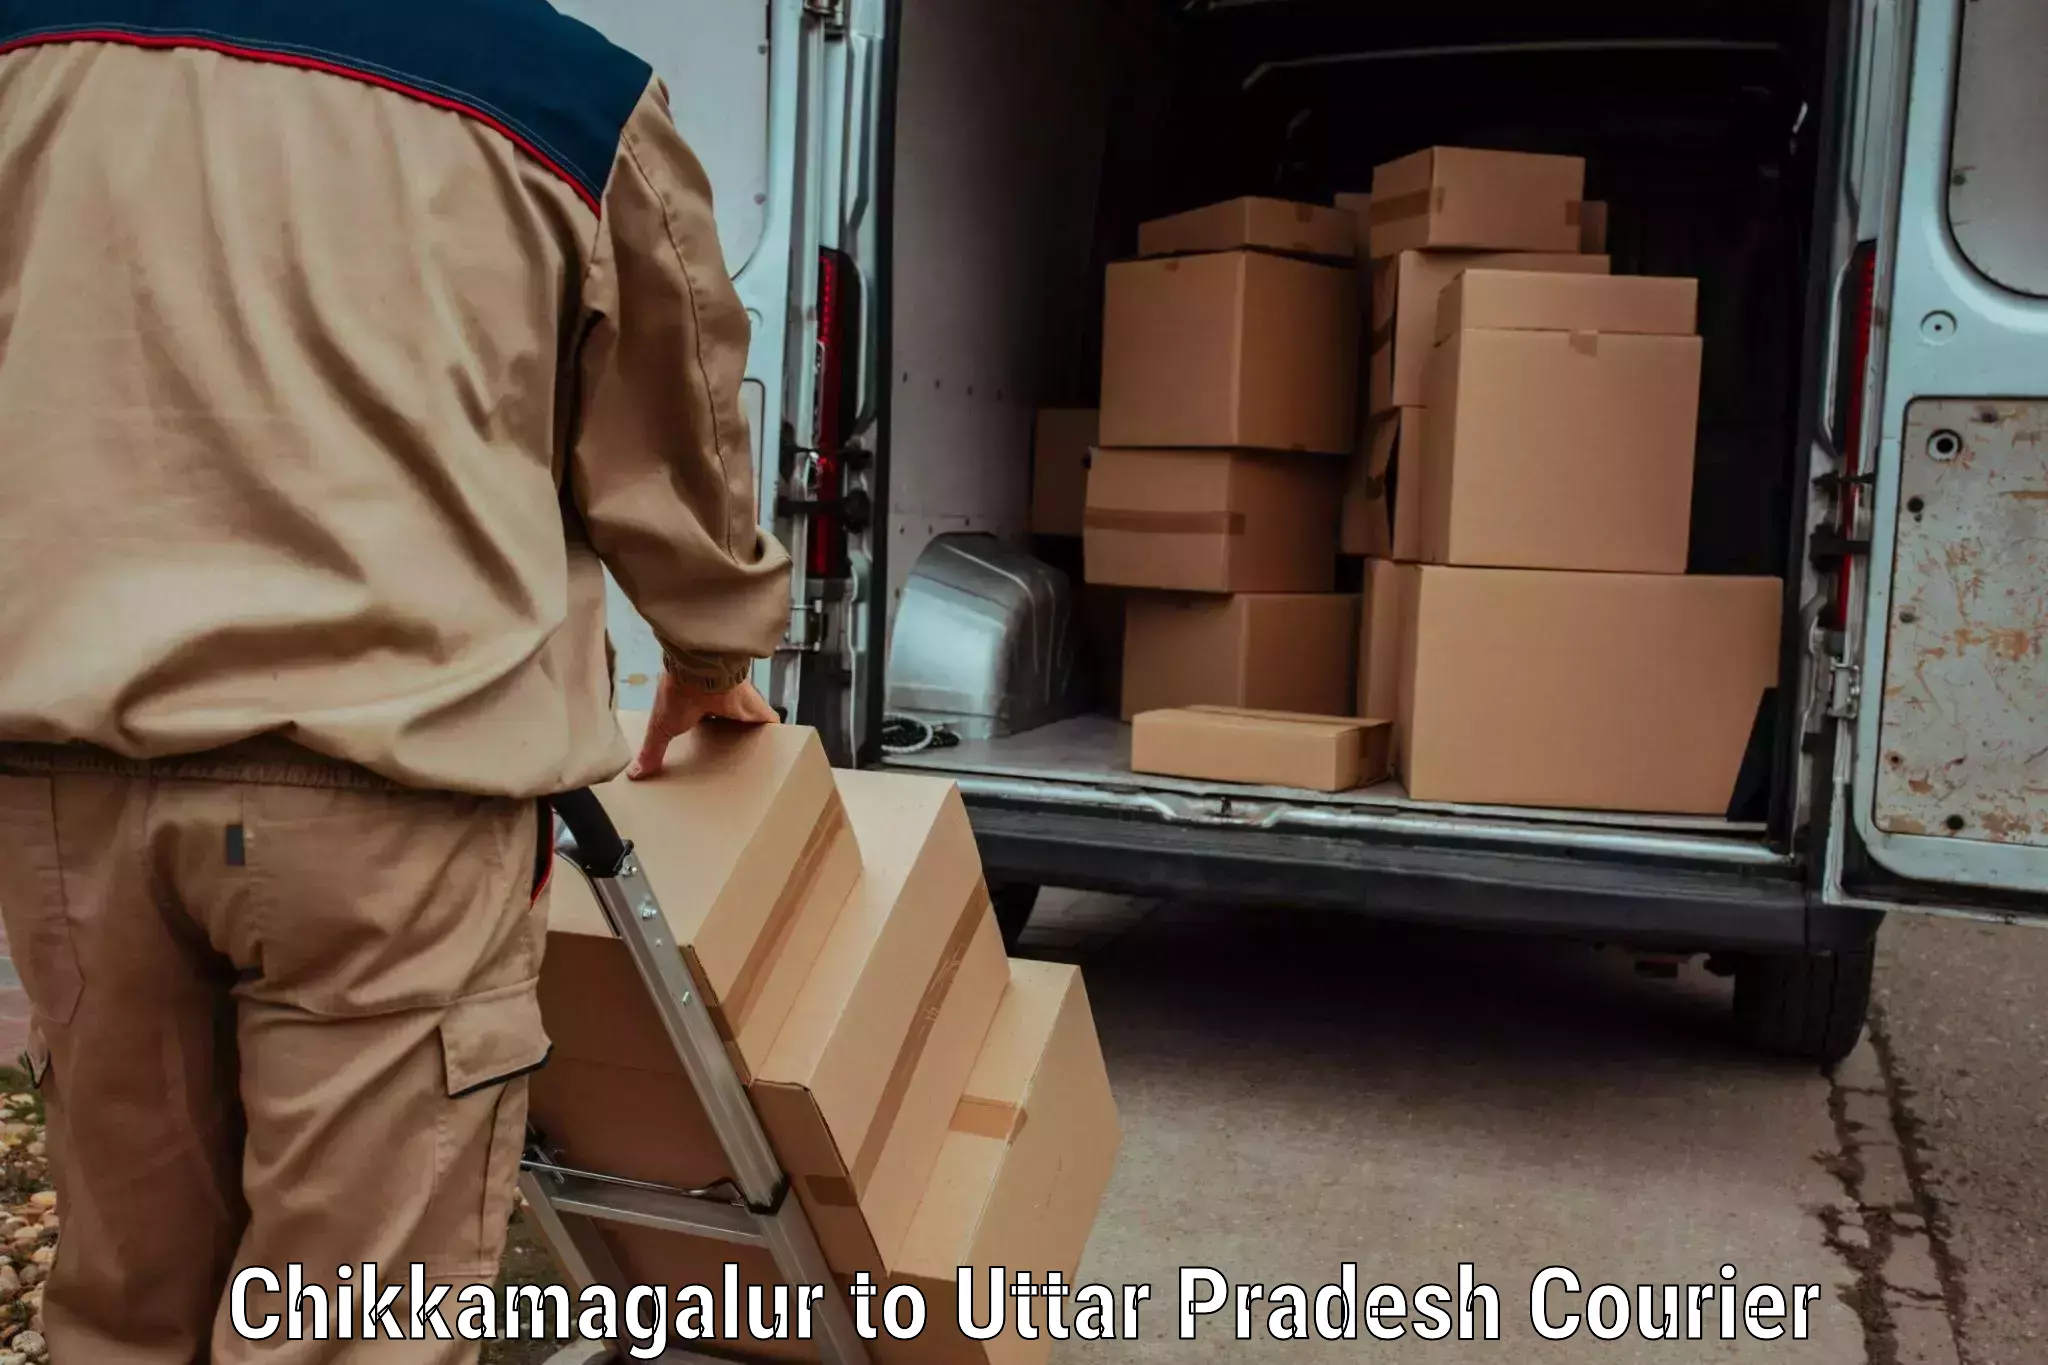 Premium courier services Chikkamagalur to Brijmanganj